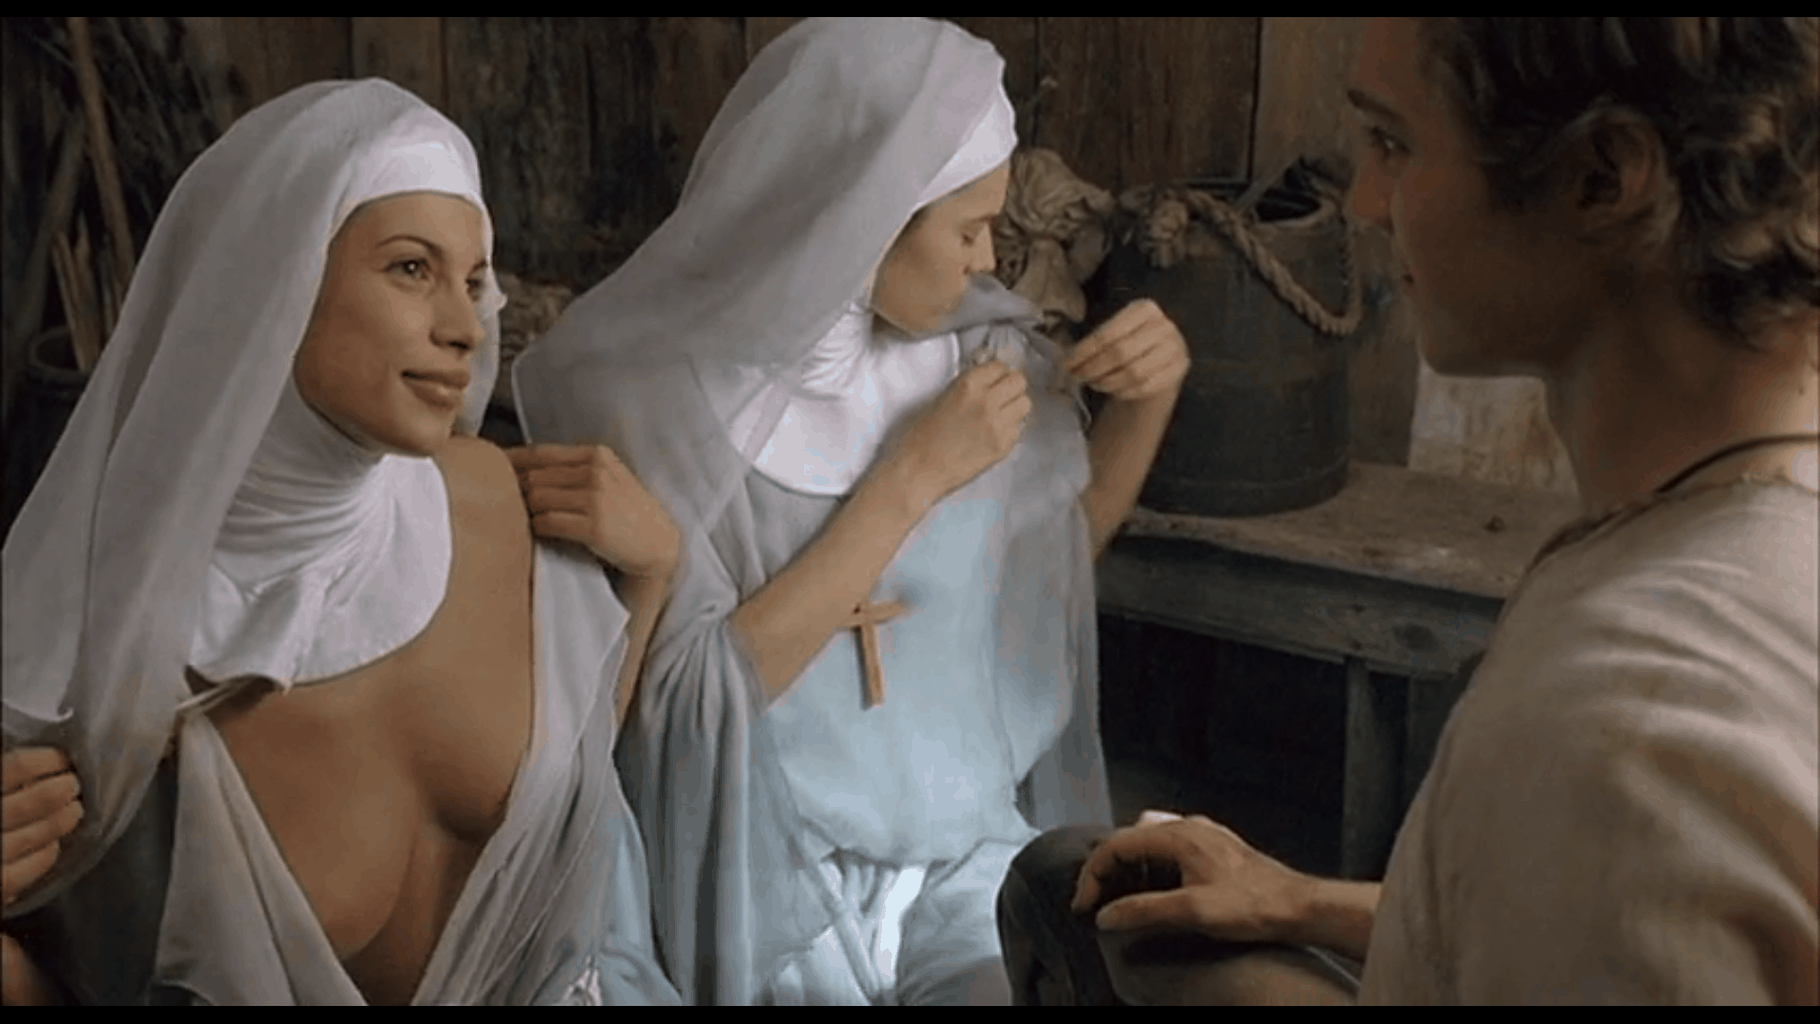 Virgin territory nuns